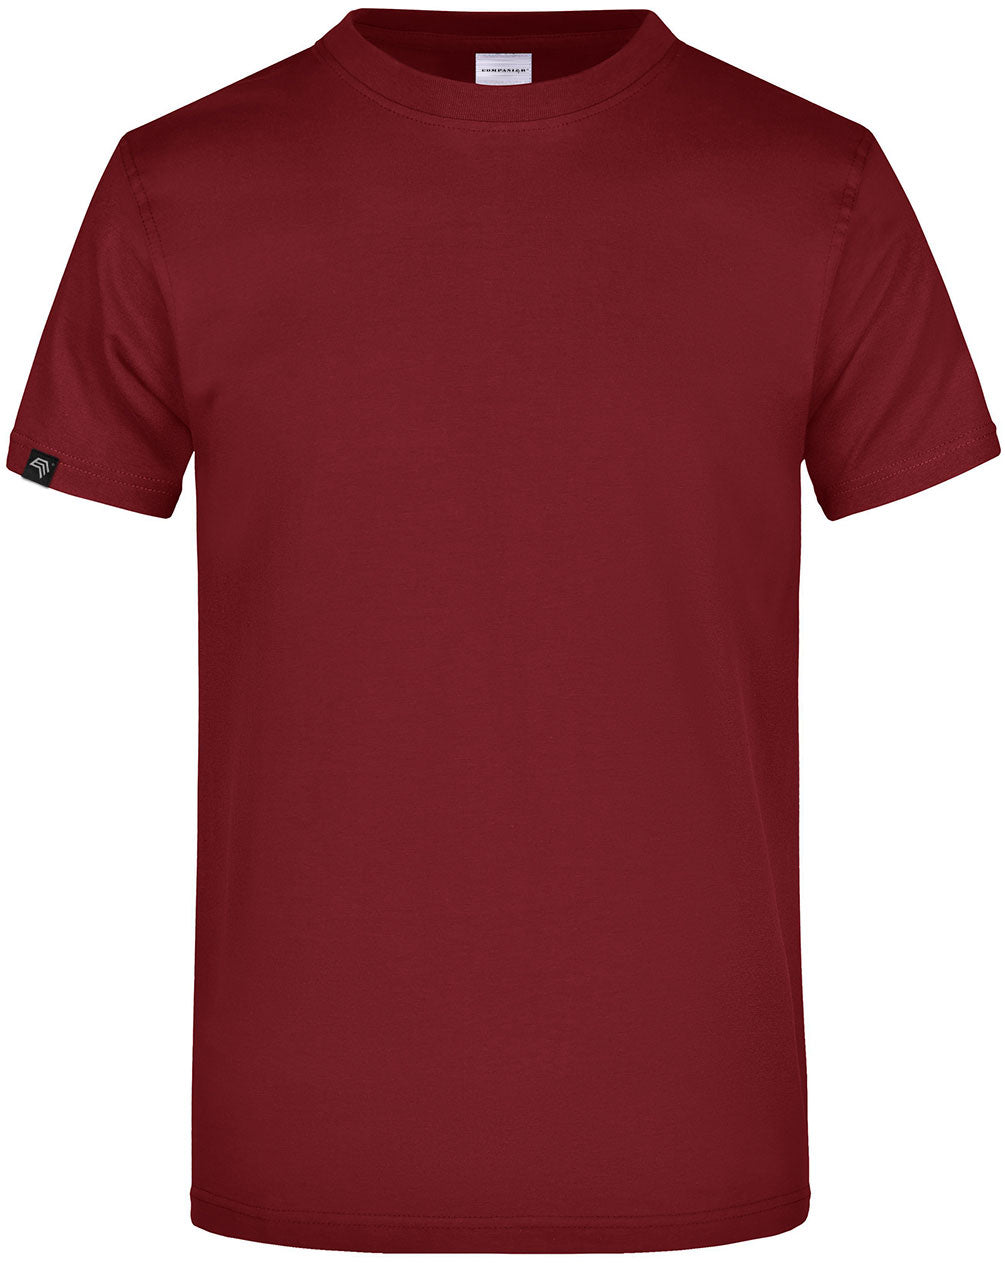 ― % ― JAN 0002 ― Herren Komfort T-Shirt - Burgund Rot [3XL]